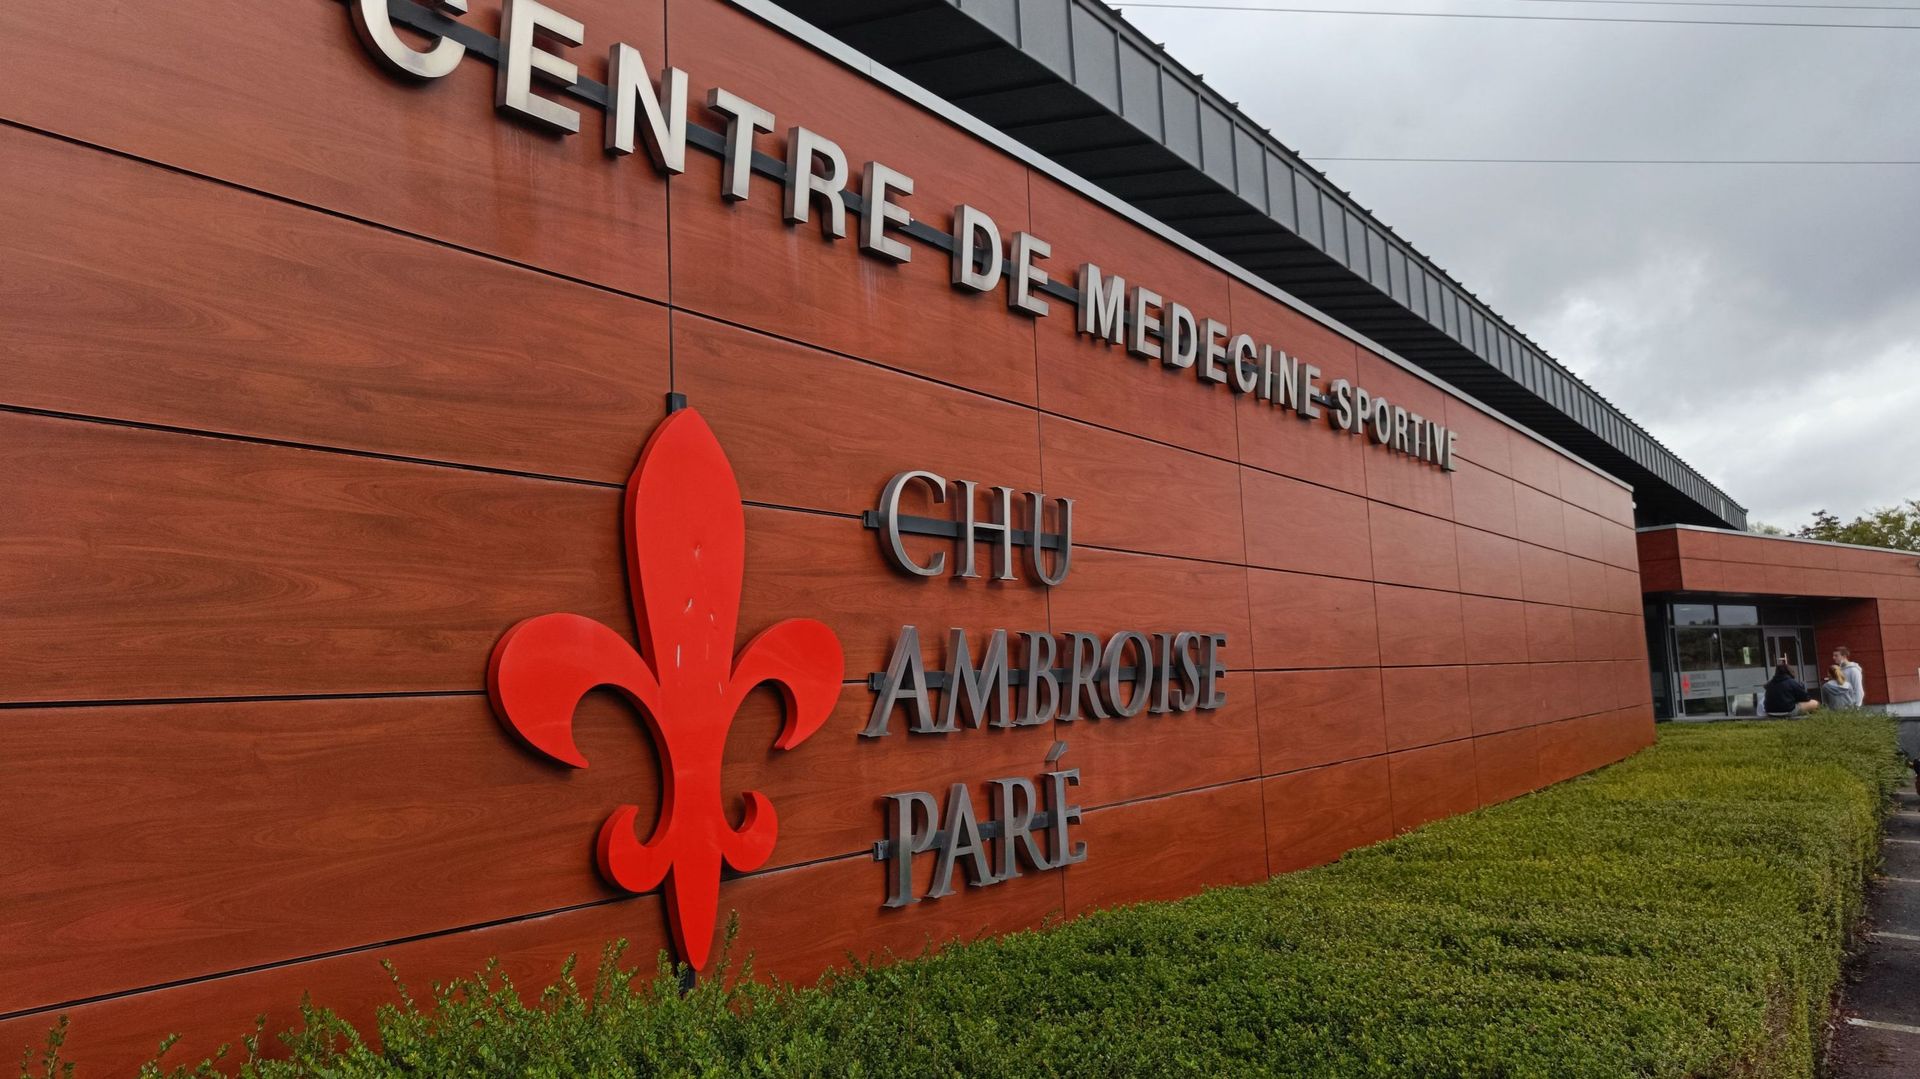 Le Club de natation STC (Swimming Team Chapelle-les-Herlaimont) s’est rendu cette semaine au Centre de Médecine Sportive du CHU Ambroise Paré.